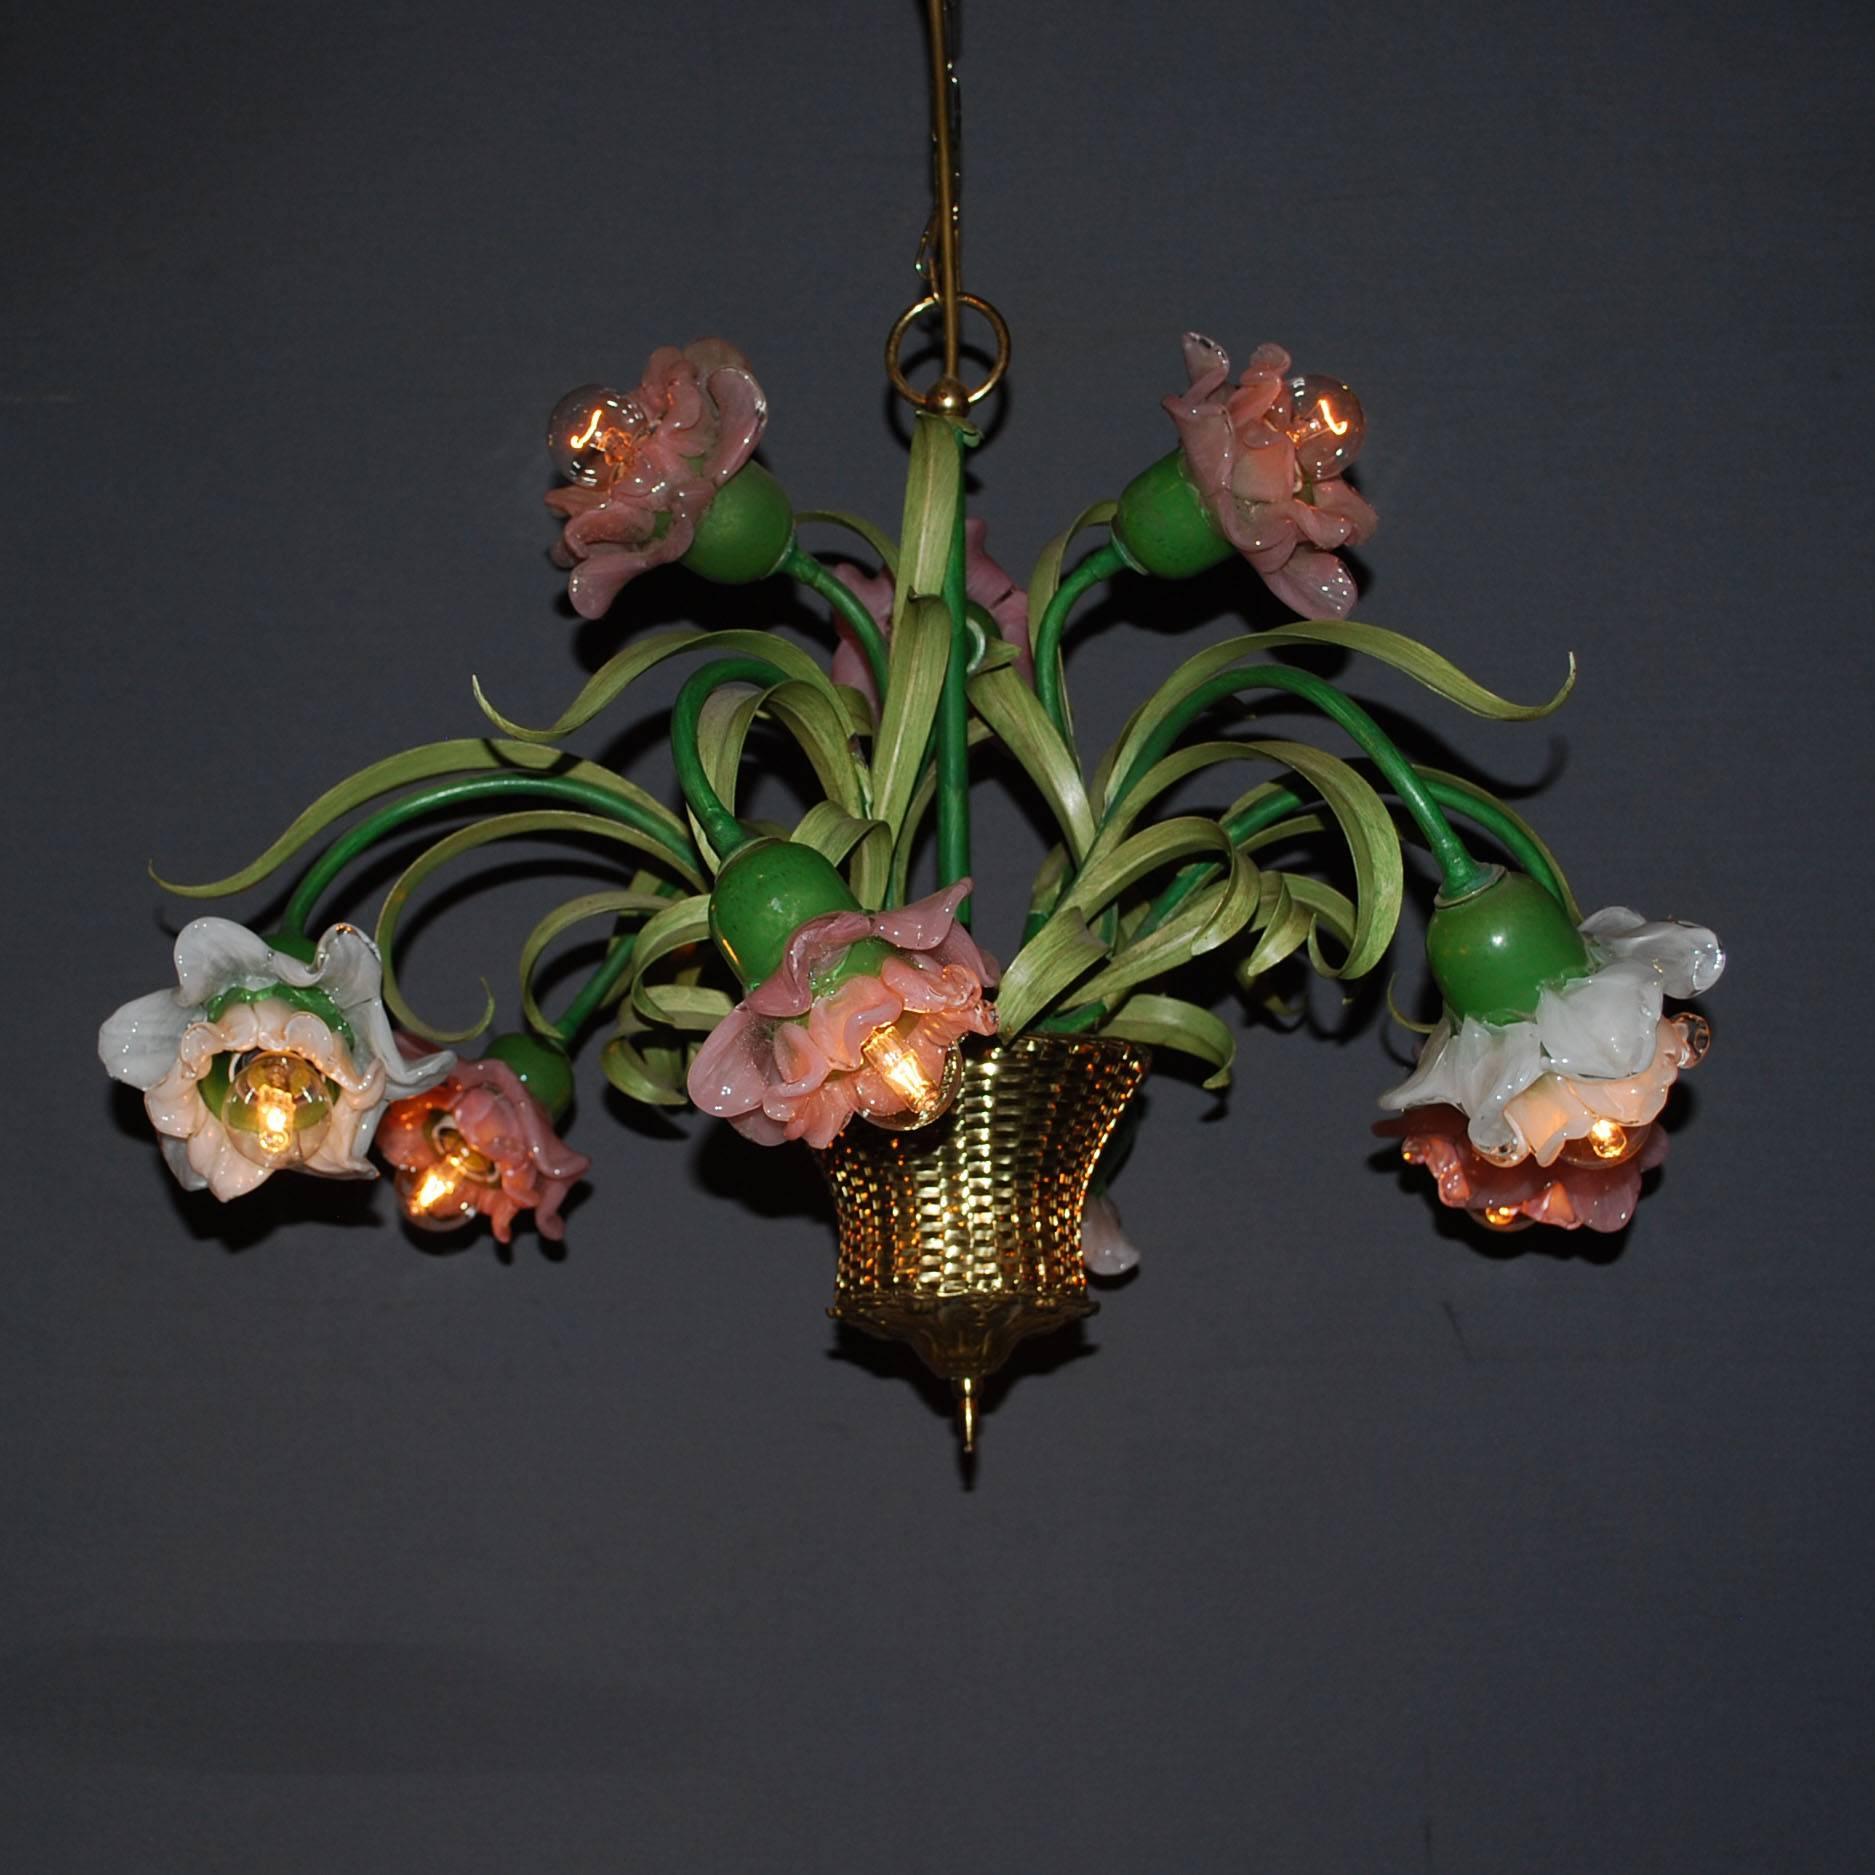 kronleuchter aus dem 20. Jahrhundert mit der Darstellung von Blumen in einem Korb.
Die Blumen sind aus handbemaltem Glas, der Korb ist aus Kupfer gefertigt.
Neun Lichter.
Stammt aus Frankreich und ist um 1960 entstanden.
